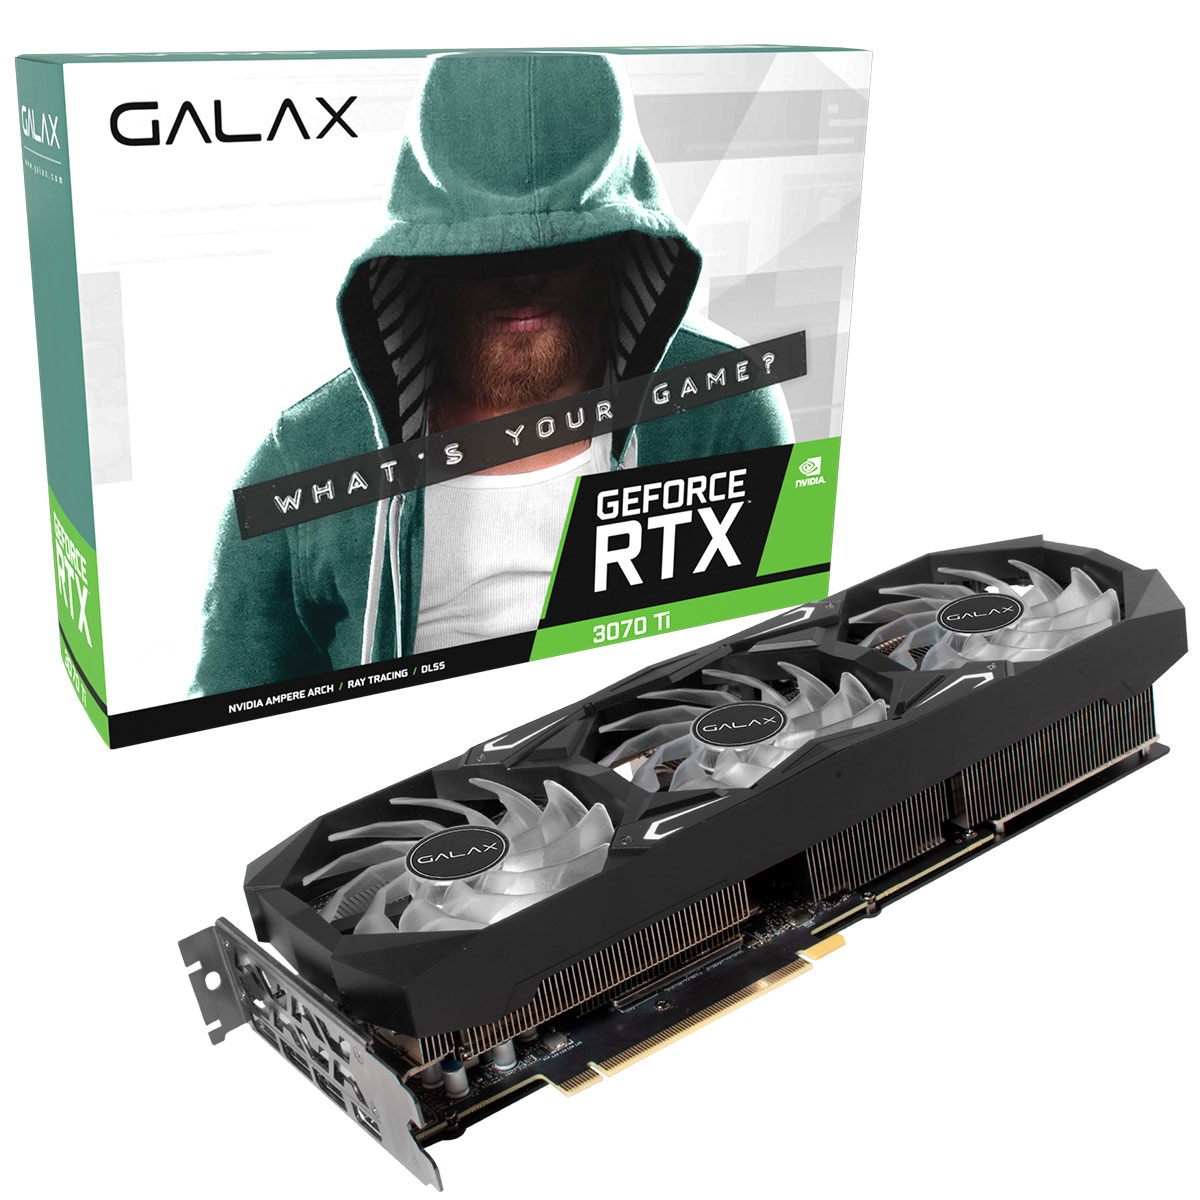 GeForce RTX 3070 Ti 8GB GDDR6X 256bits - Galax Serious Gaming Series 37ISM6MD4BSG - Selo LHR